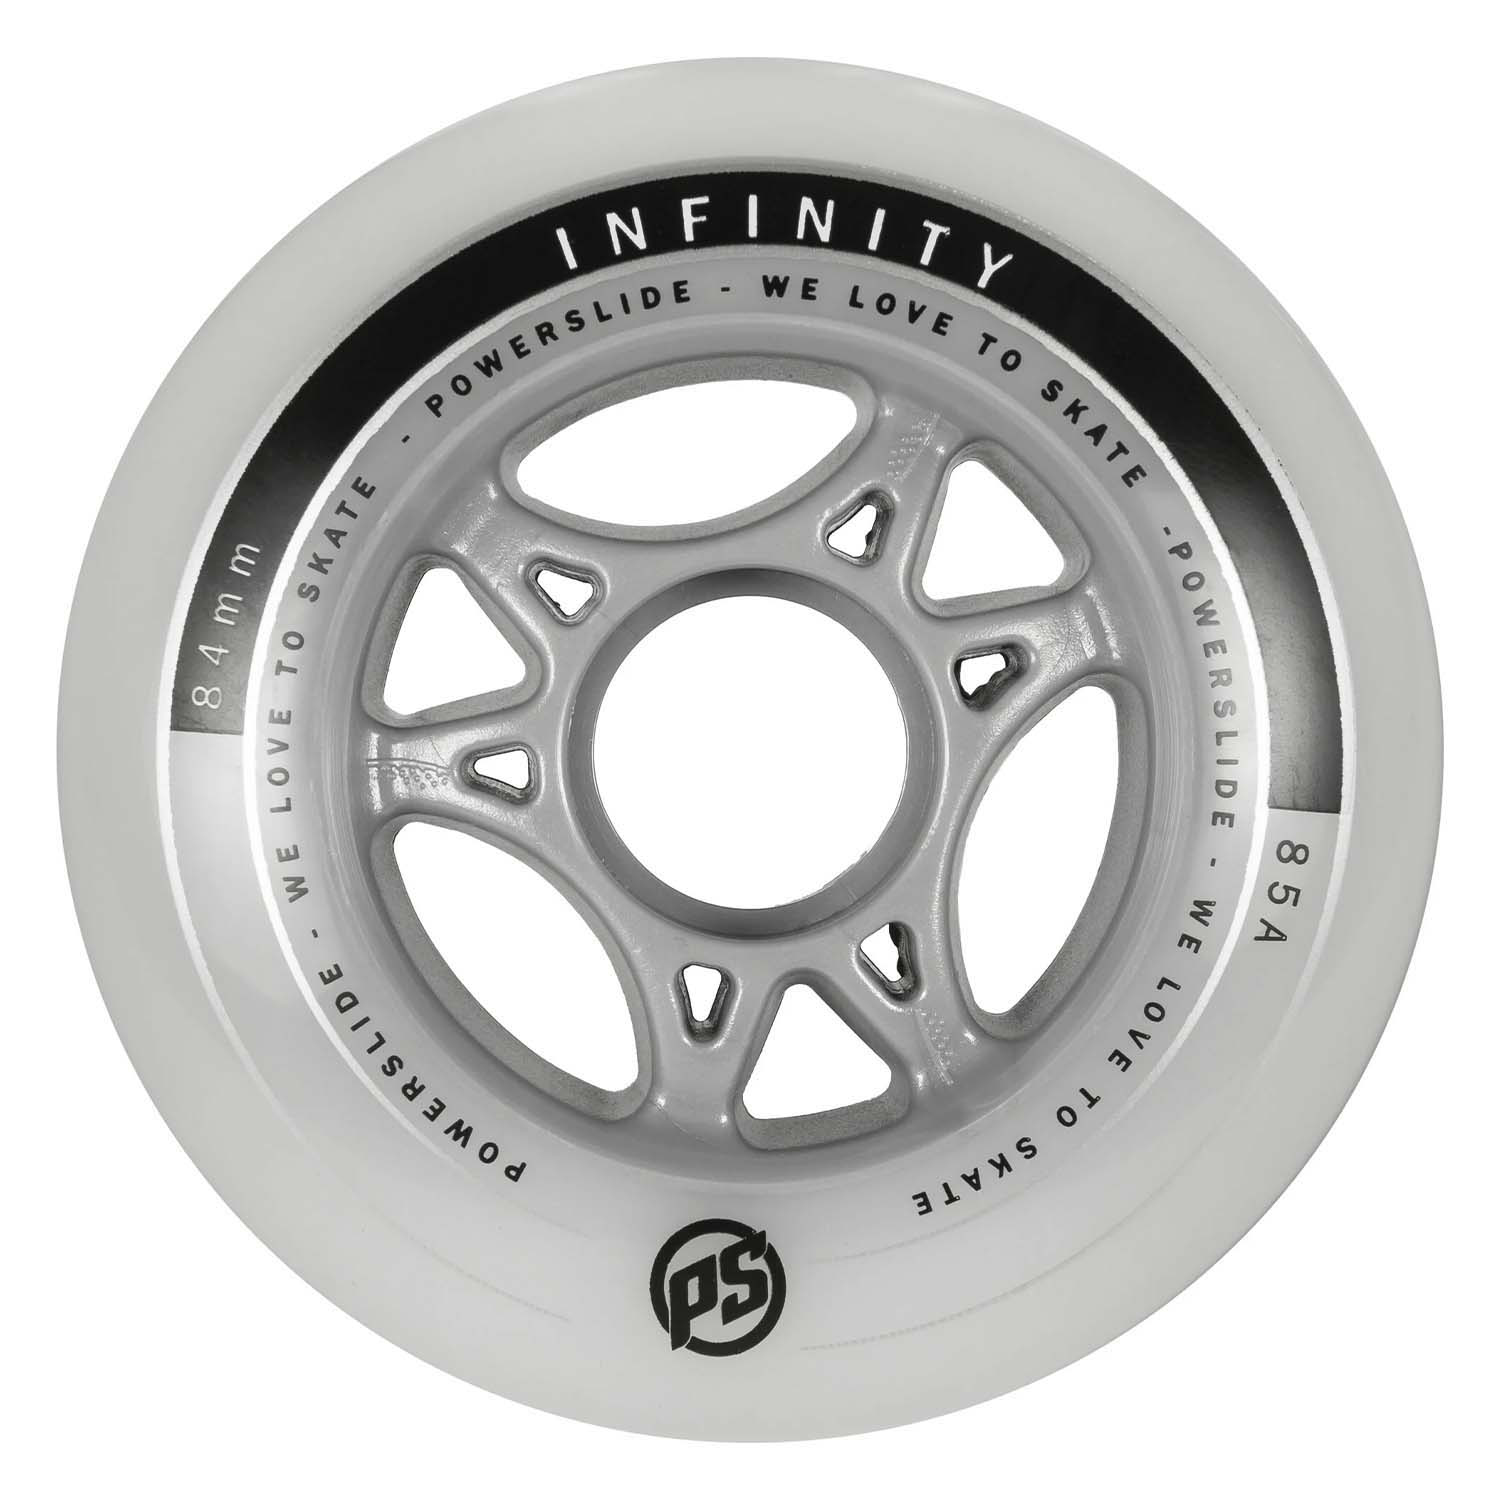 Комплект колёс для роликов Powerslide Infinity 84/85A, 4-pack Silver/Grey